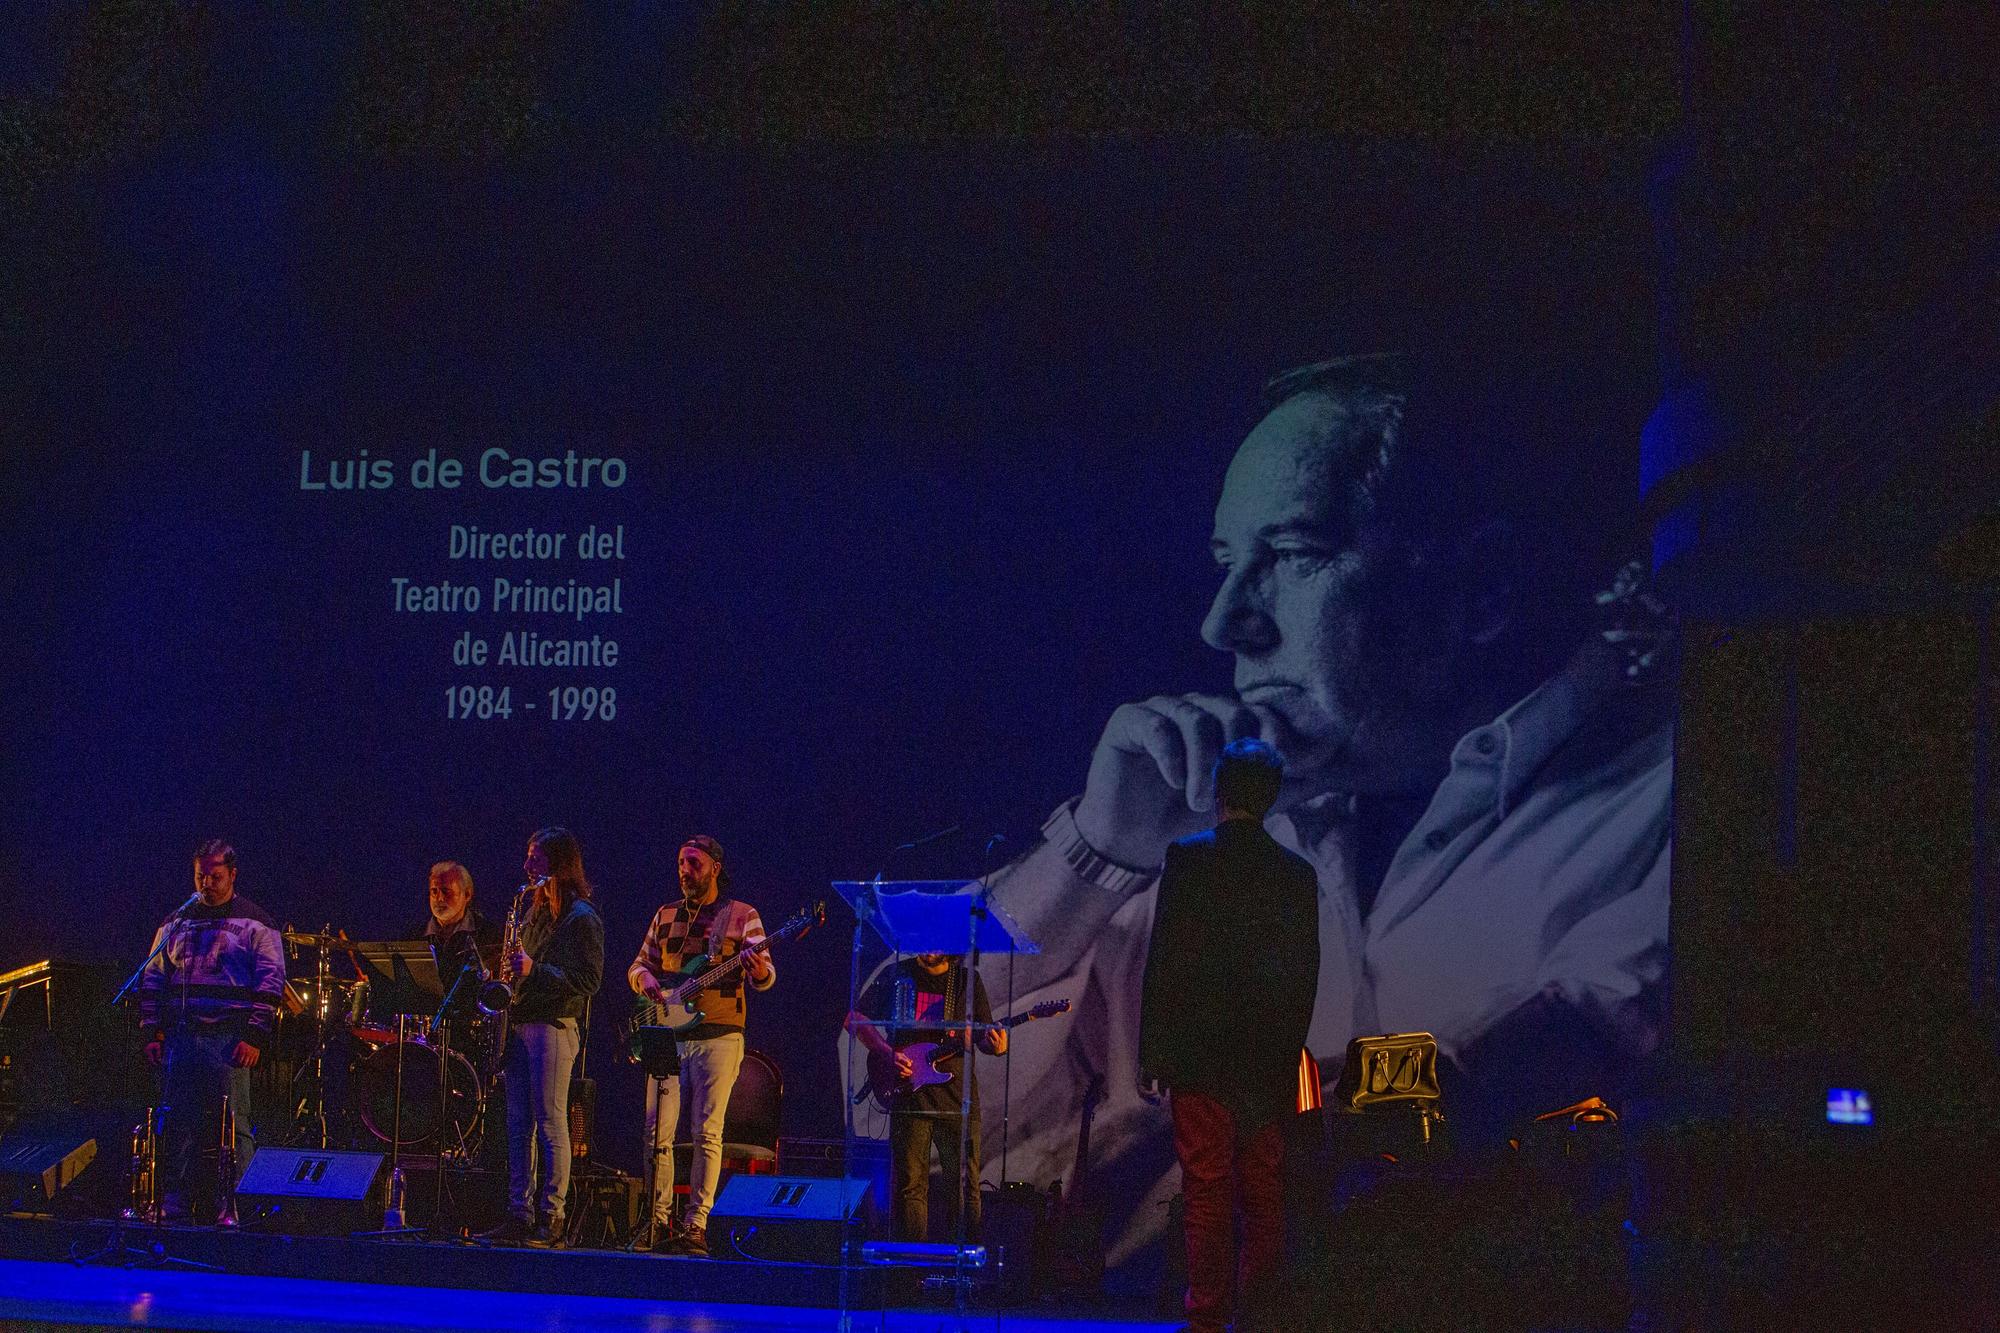 José Estruch Awards Gala at the Teatro Principal in Alicante